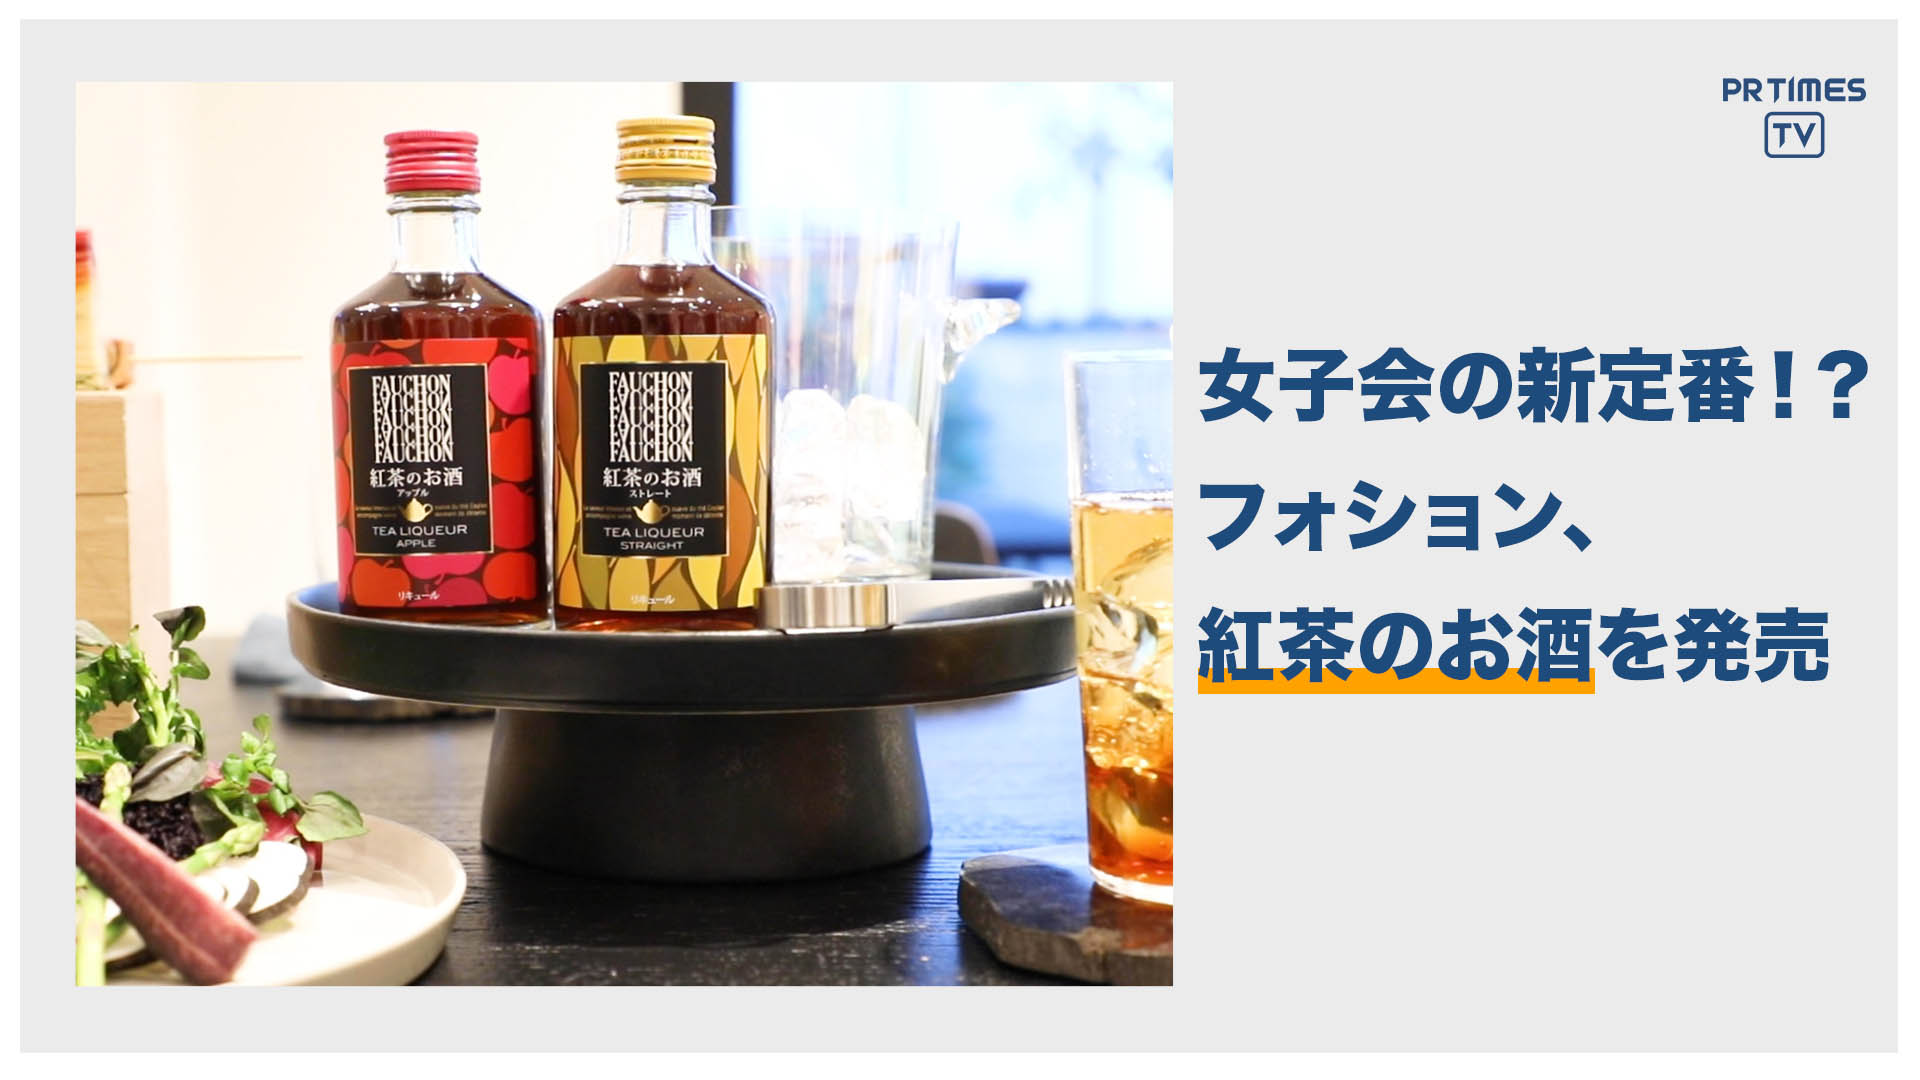 「フォション 紅茶のお酒」2月18日よりAmazon限定で新発売